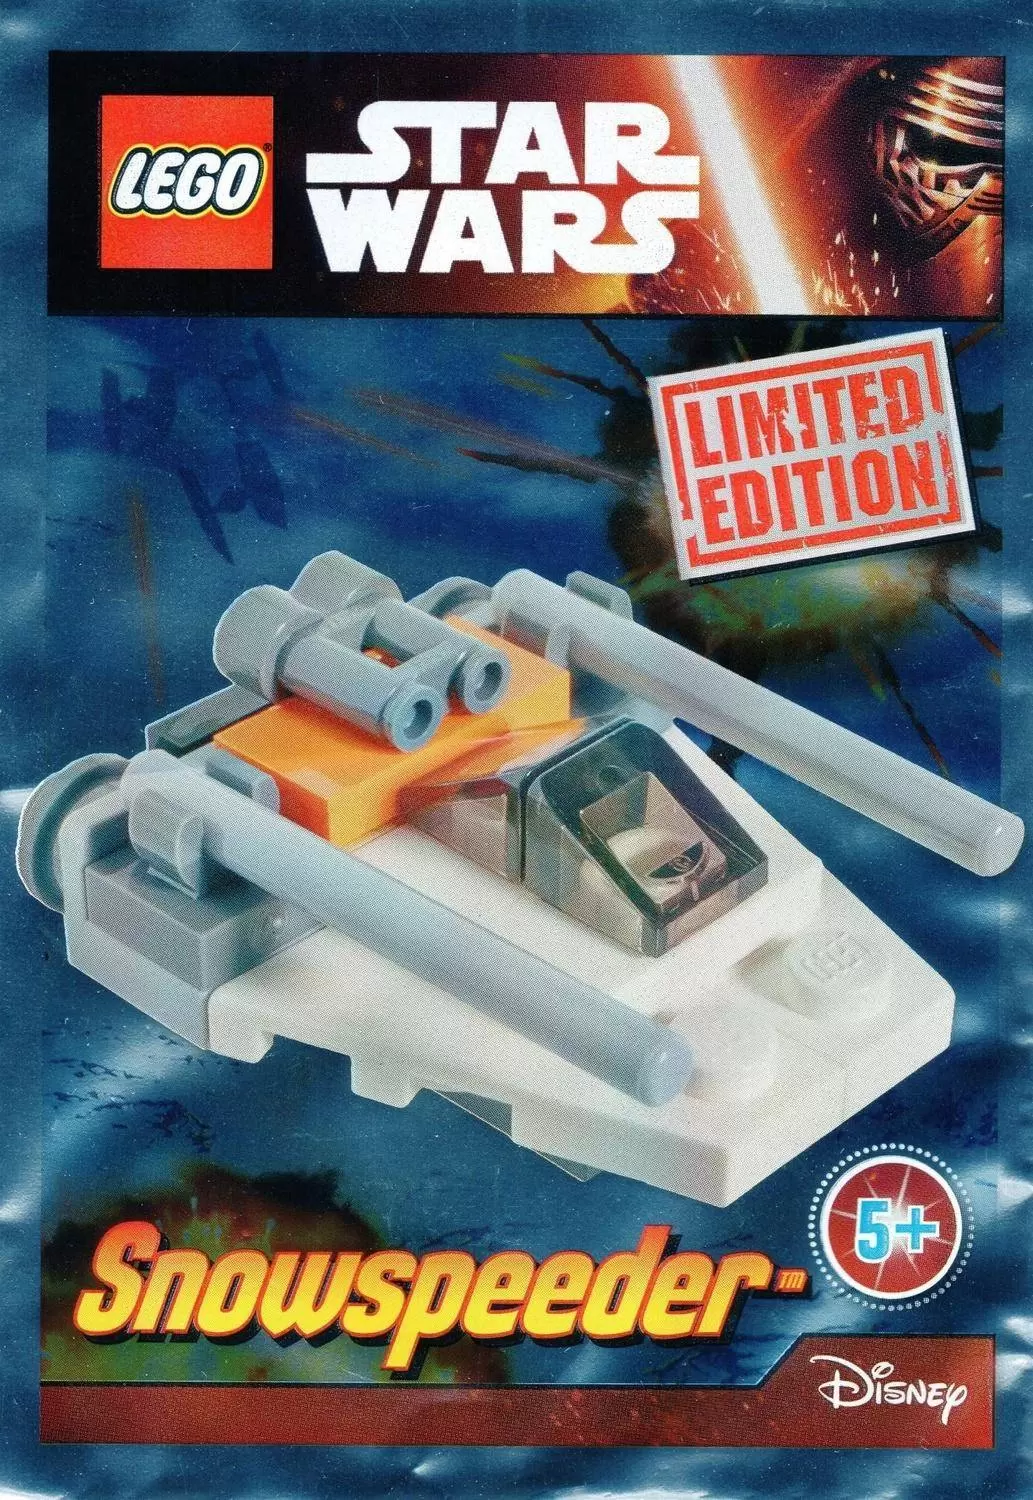 LEGO Star Wars - Snowspeeder